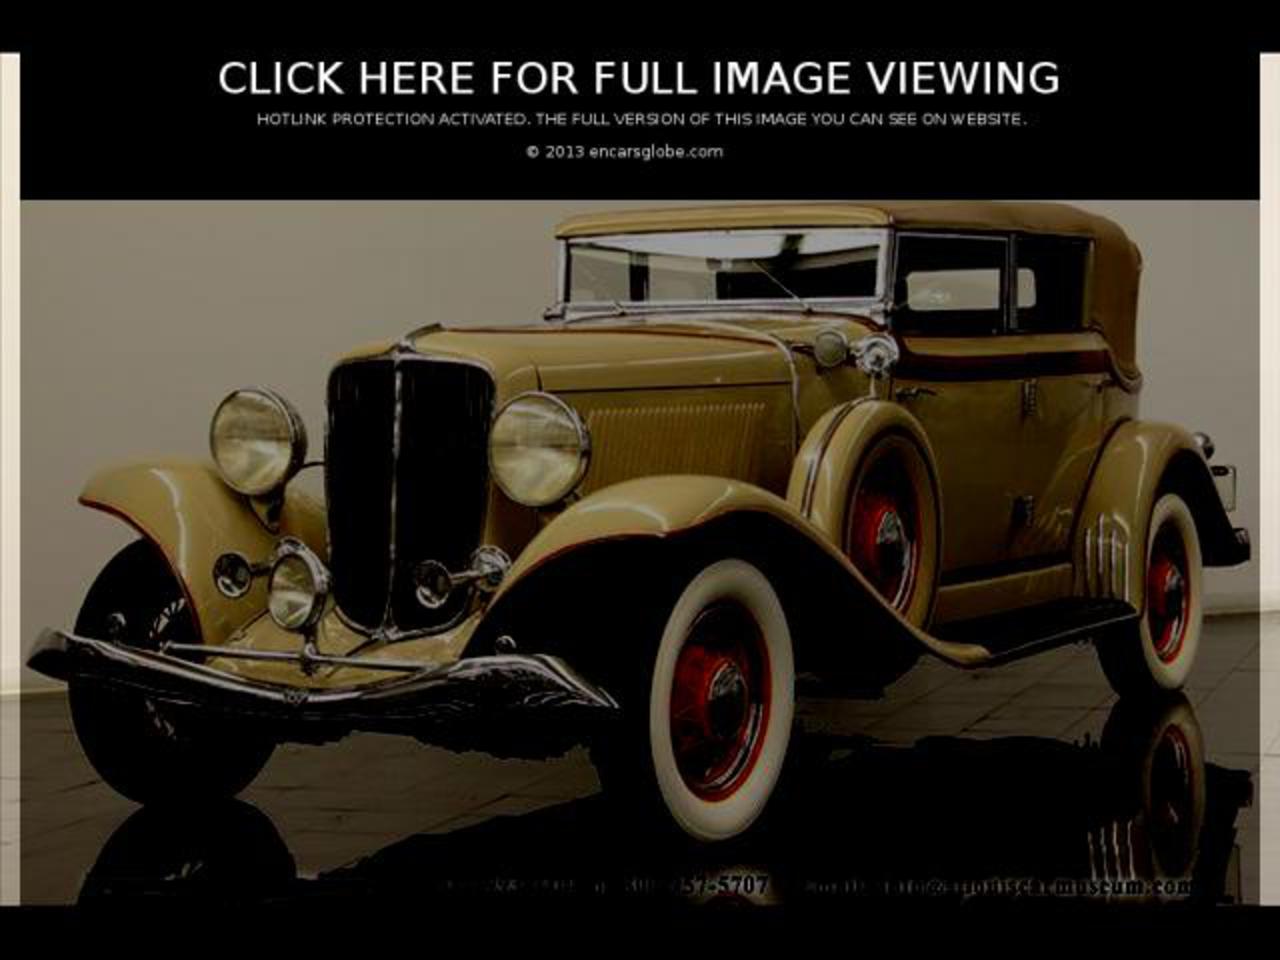 Galerie de photos Auburn 8-100 Cabriolet: Photo #03 sur 11, Image...